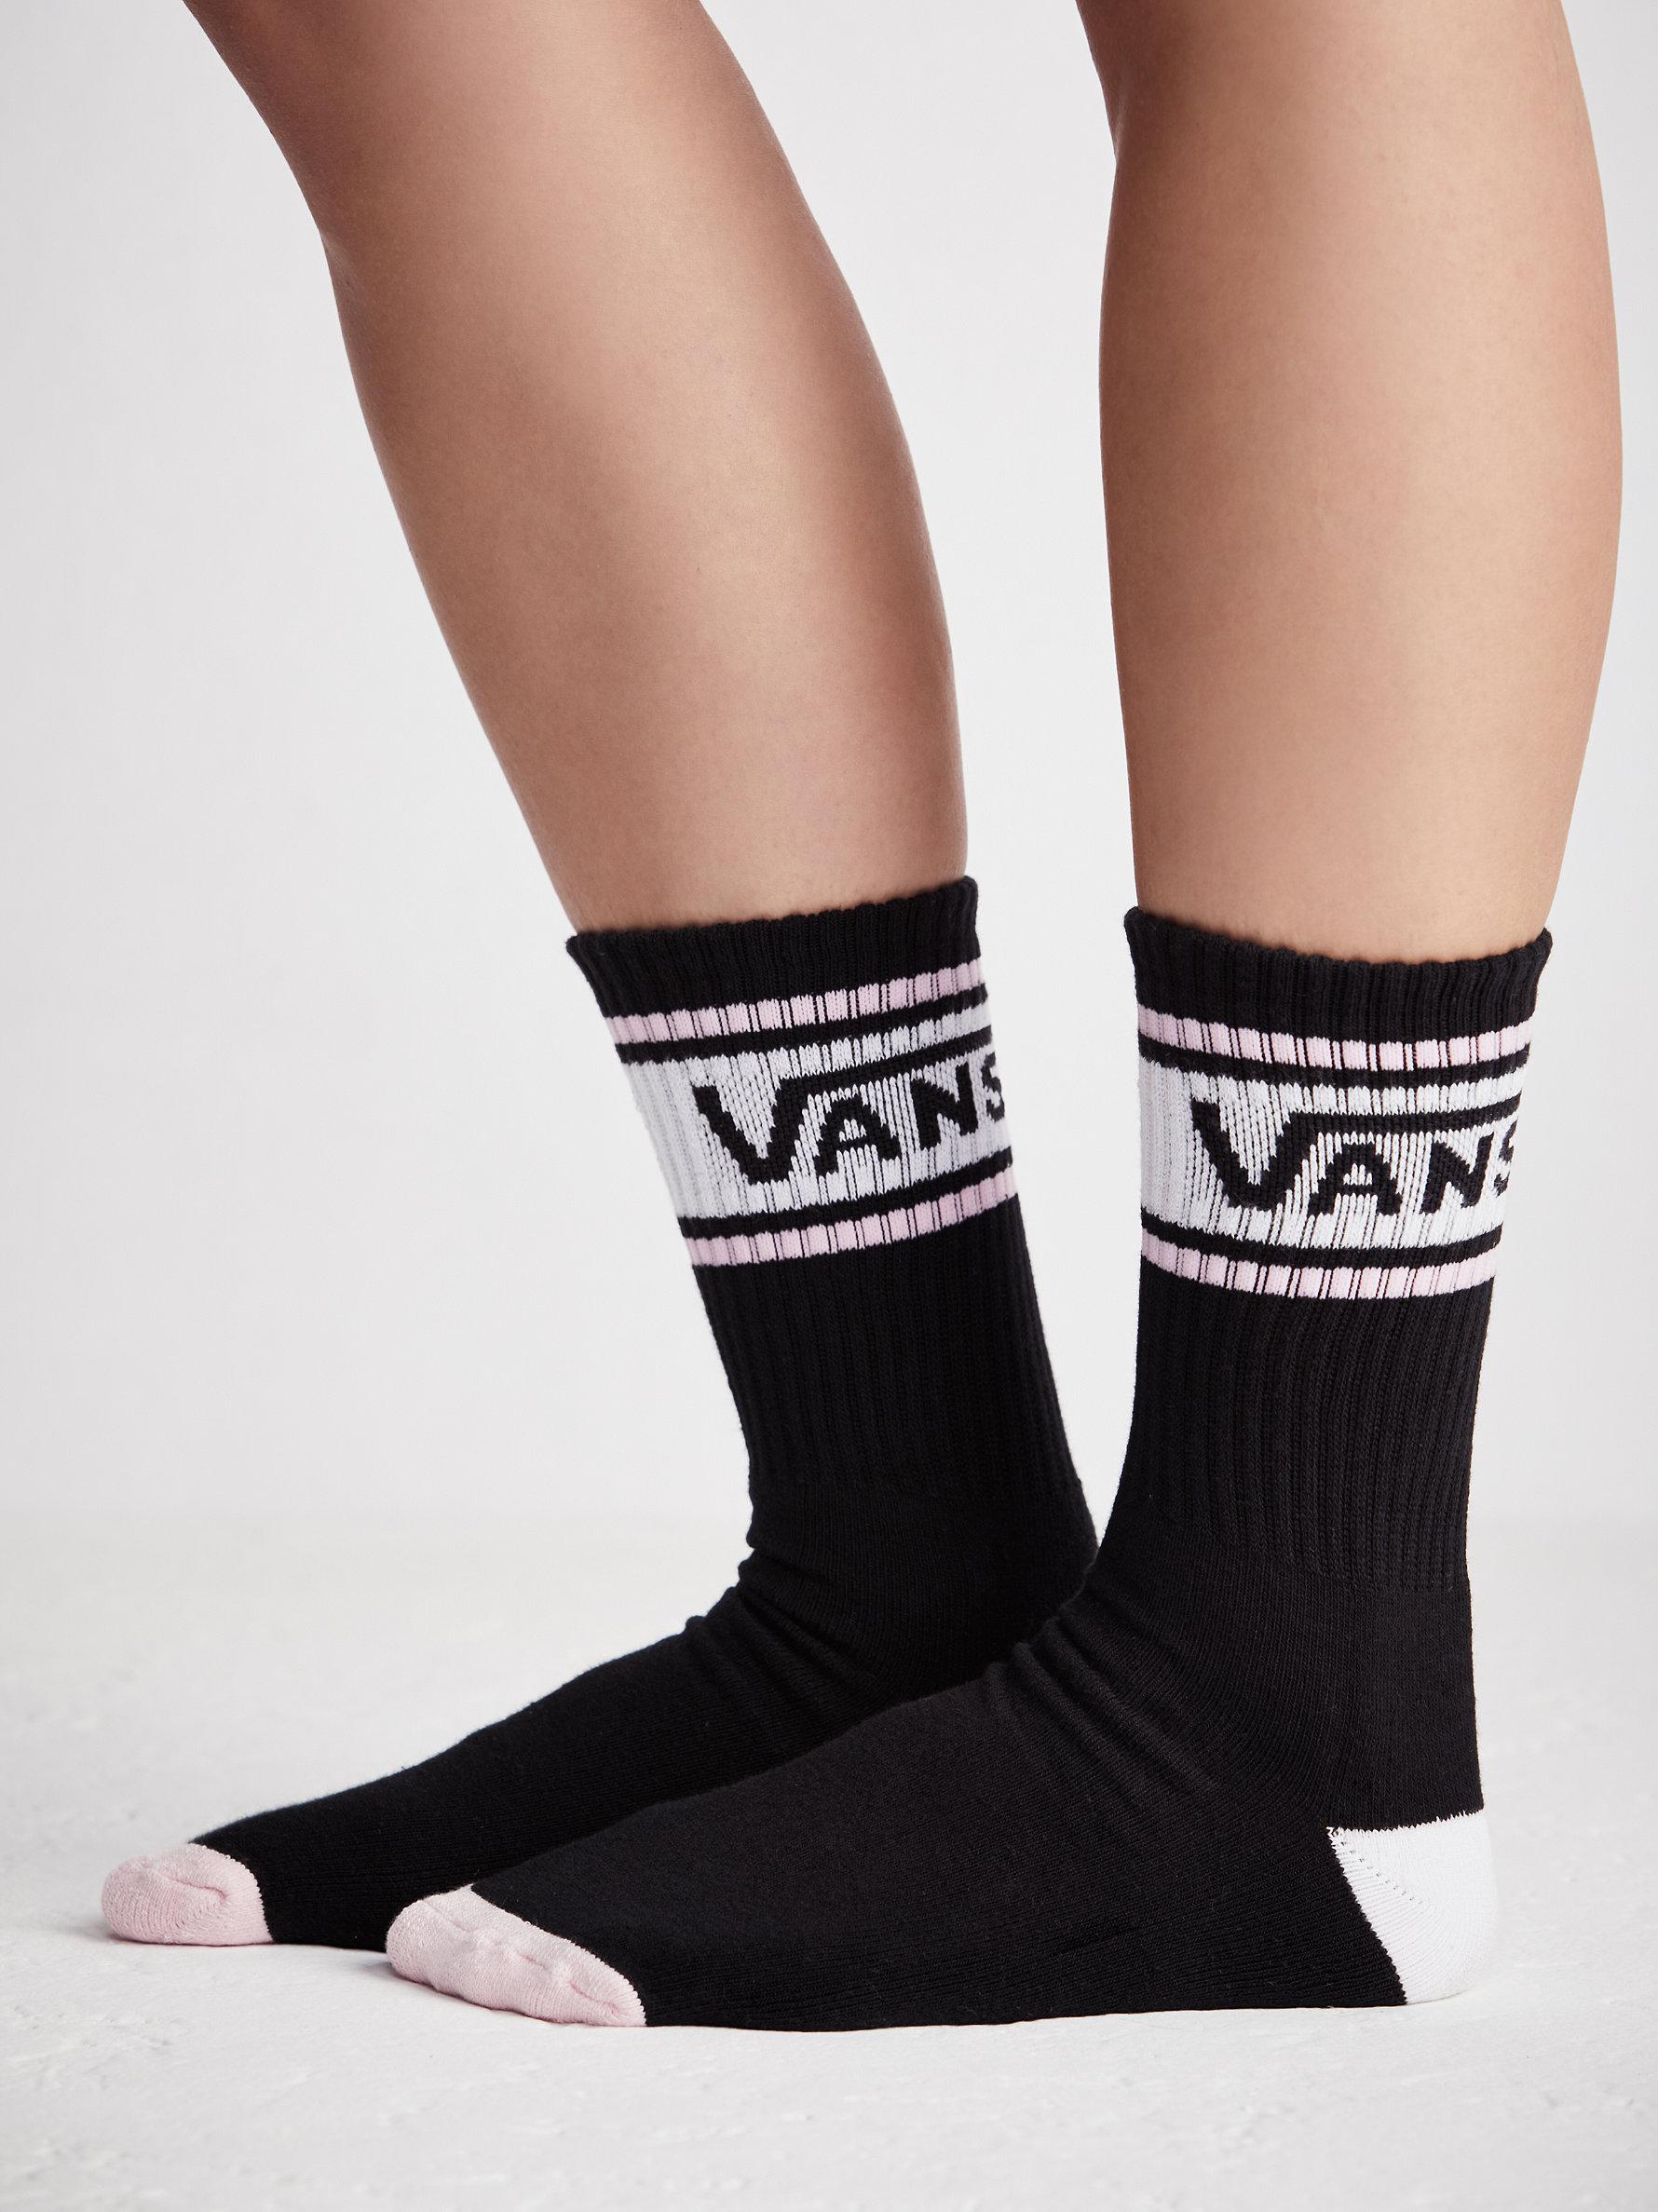 Free People Cotton Vans Girl Gang Sock in Black / Pink (Black) - Lyst